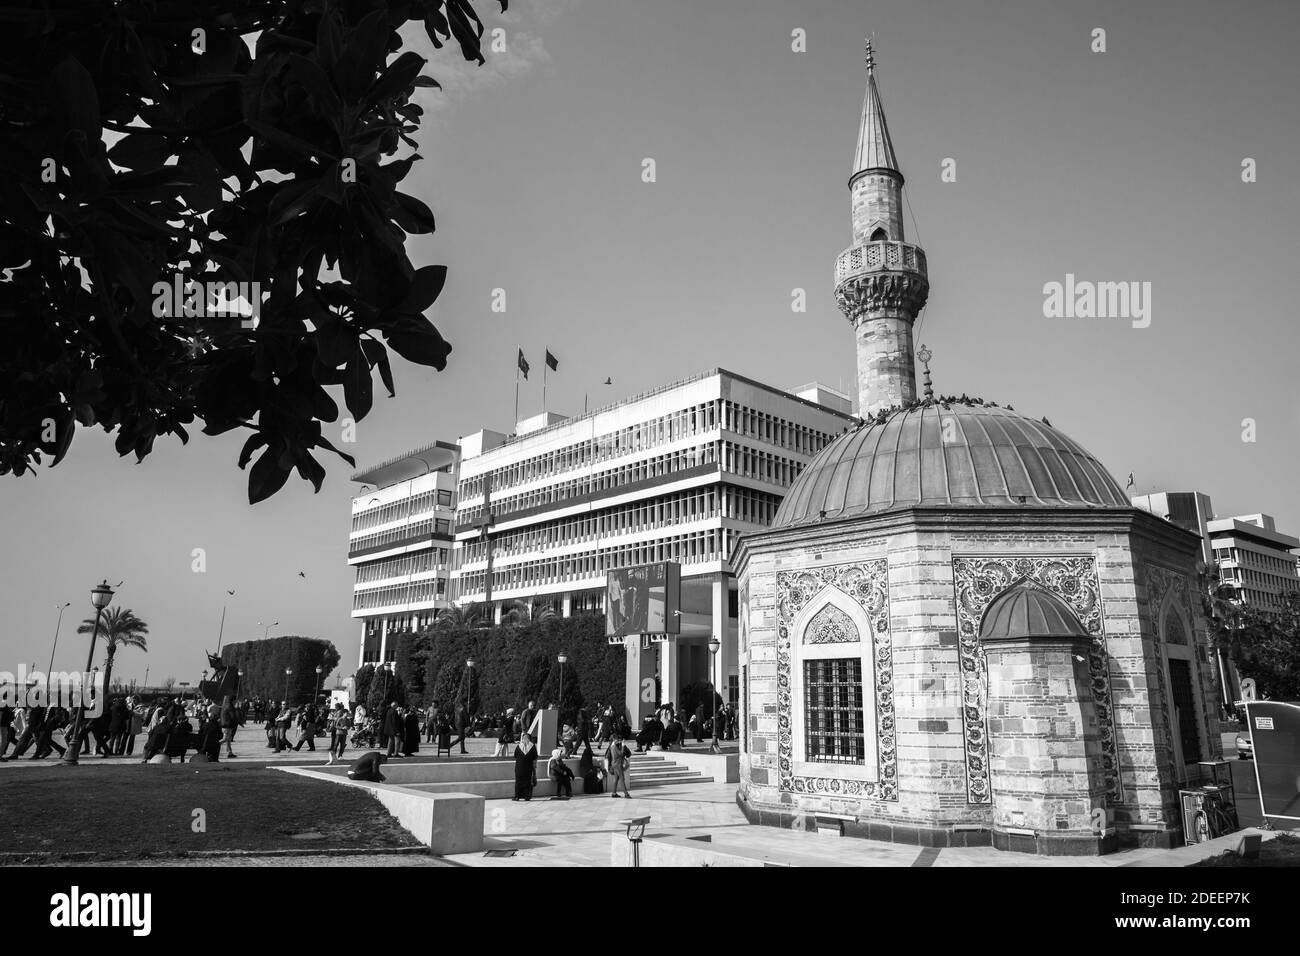 Izmir, Türkei - 5. Februar 2015: Blick auf den Konak-Platz mit der alten Camii-Moschee, gewöhnliche Menschen gehen die Straße entlang. Schwarzweiß-Foto. Stockfoto